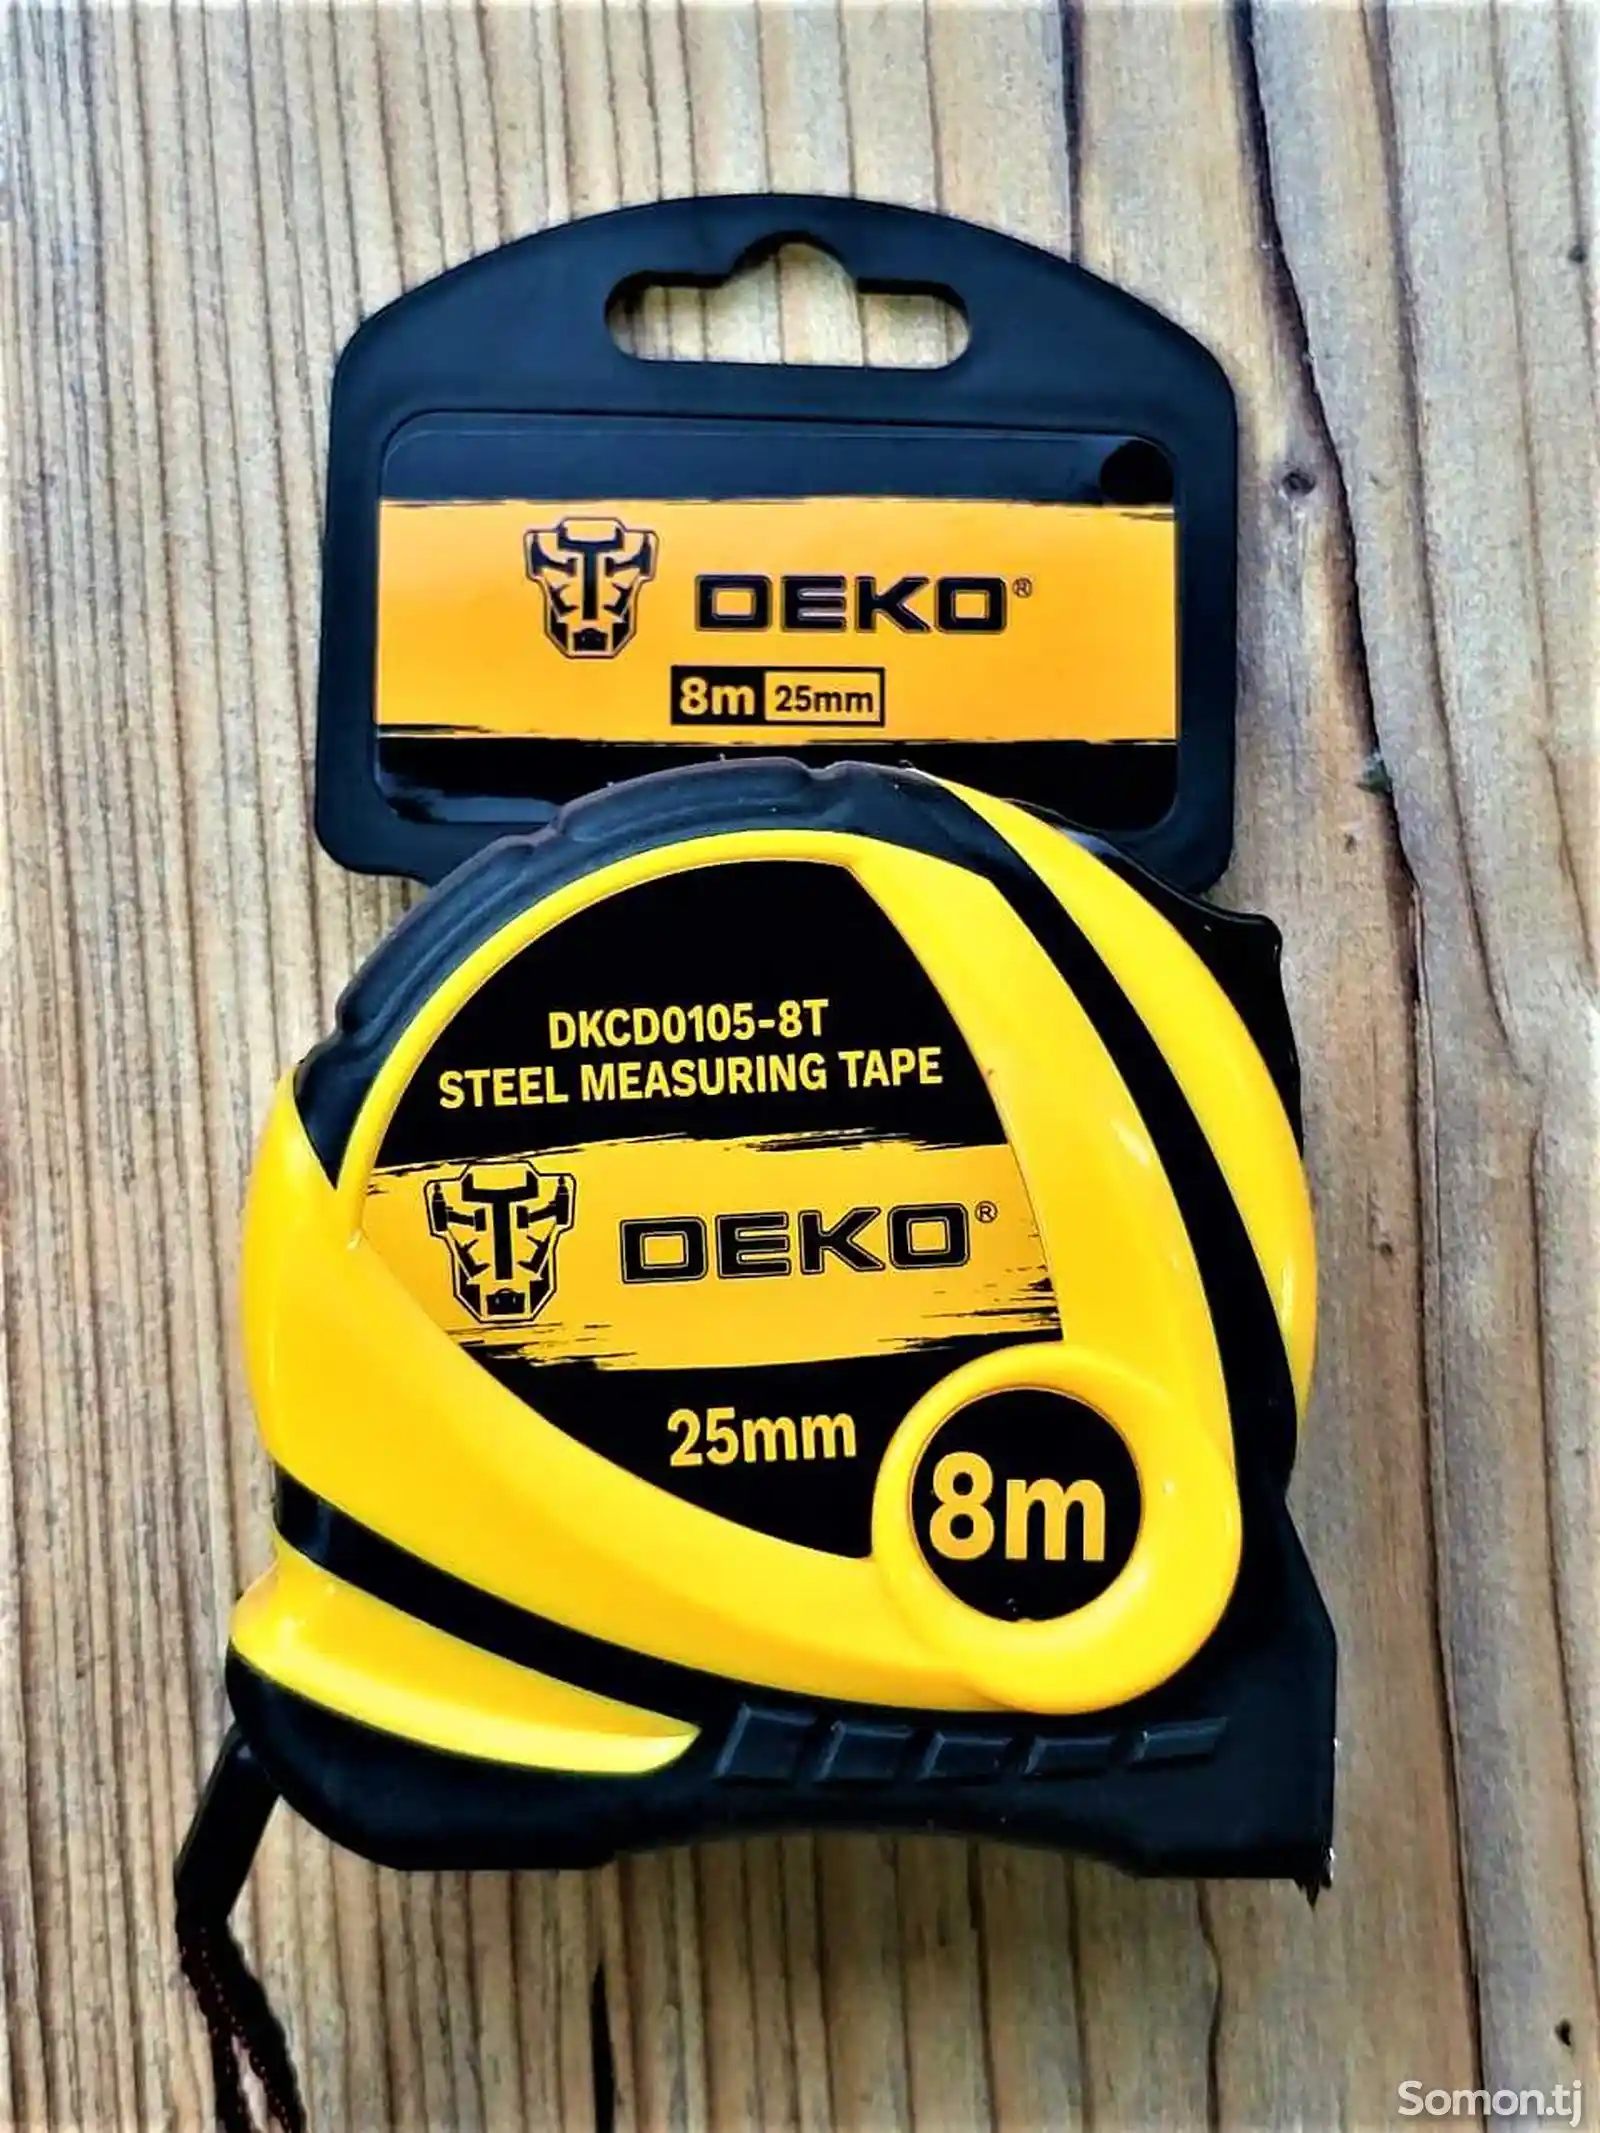 Измерительная рулетка 8М 25мм Deko DKCD0105-8T-1